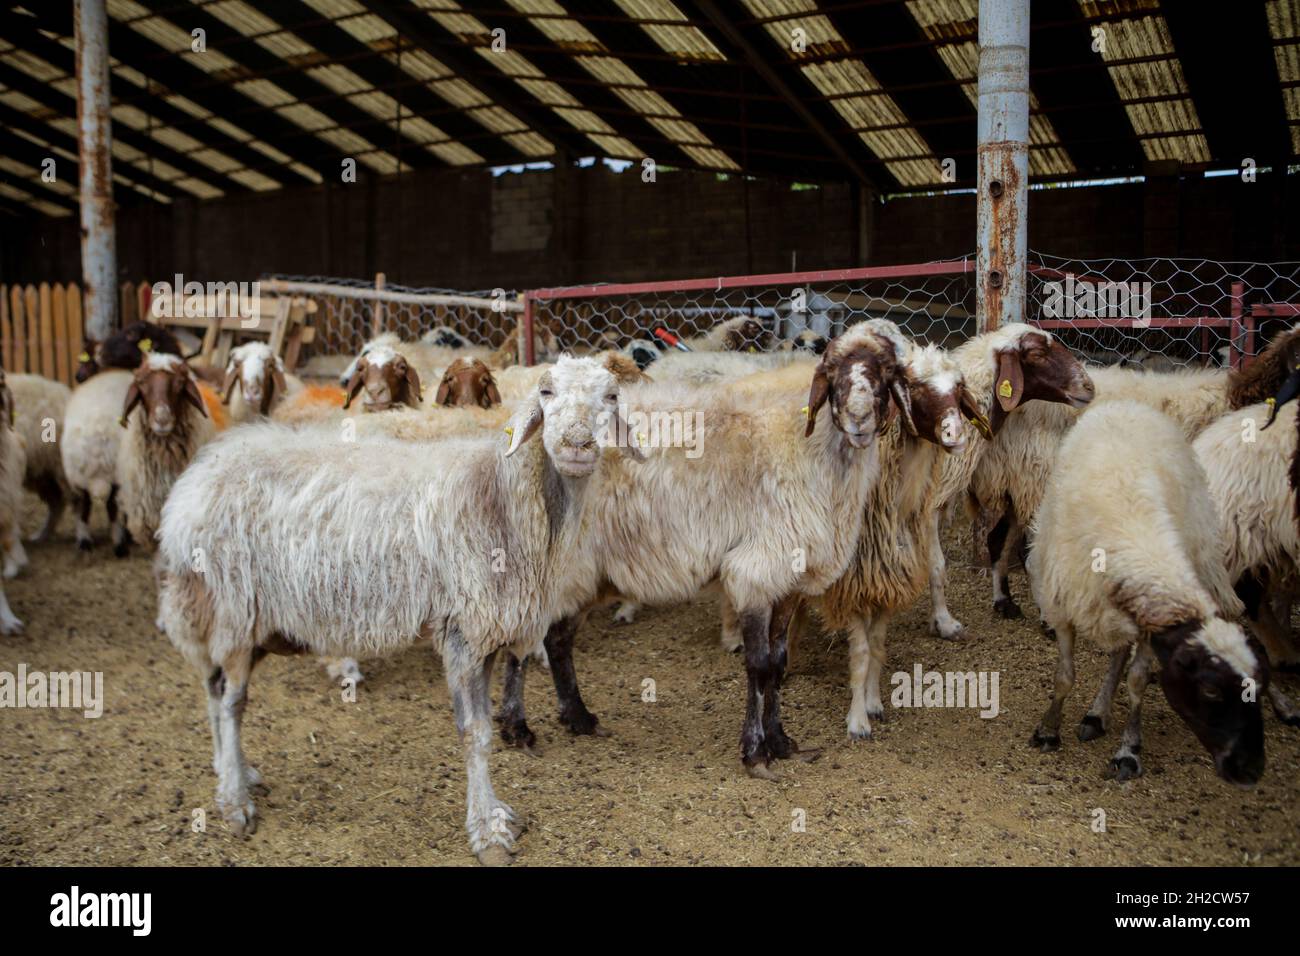 17 octobre 2021, Gaziantep, Anatolie, Turquie : Gaziantep,Turquie.19 octobre 2021.Moutons dans les fermes œGrand dans la ville de Gaziantep, dans le sud de la Turquie.La ferme reproduit des chèvres, des moutons et des poulets, et produit un grand nombre d'oeufs à aire libre.La ferme, qui cultive également des champignons et produit des fourrages pour animaux, s'engage à protéger l'environnement et à assurer la durabilité.L'entreprise est un exemple d'intégration réussie des Syriens qui s'installent en Turquie après avoir fui le conflit dans leur pays d'origine (Credit image: © Mohammad ATA/IMAGESLIVE via ZUMA Press Wire) Banque D'Images